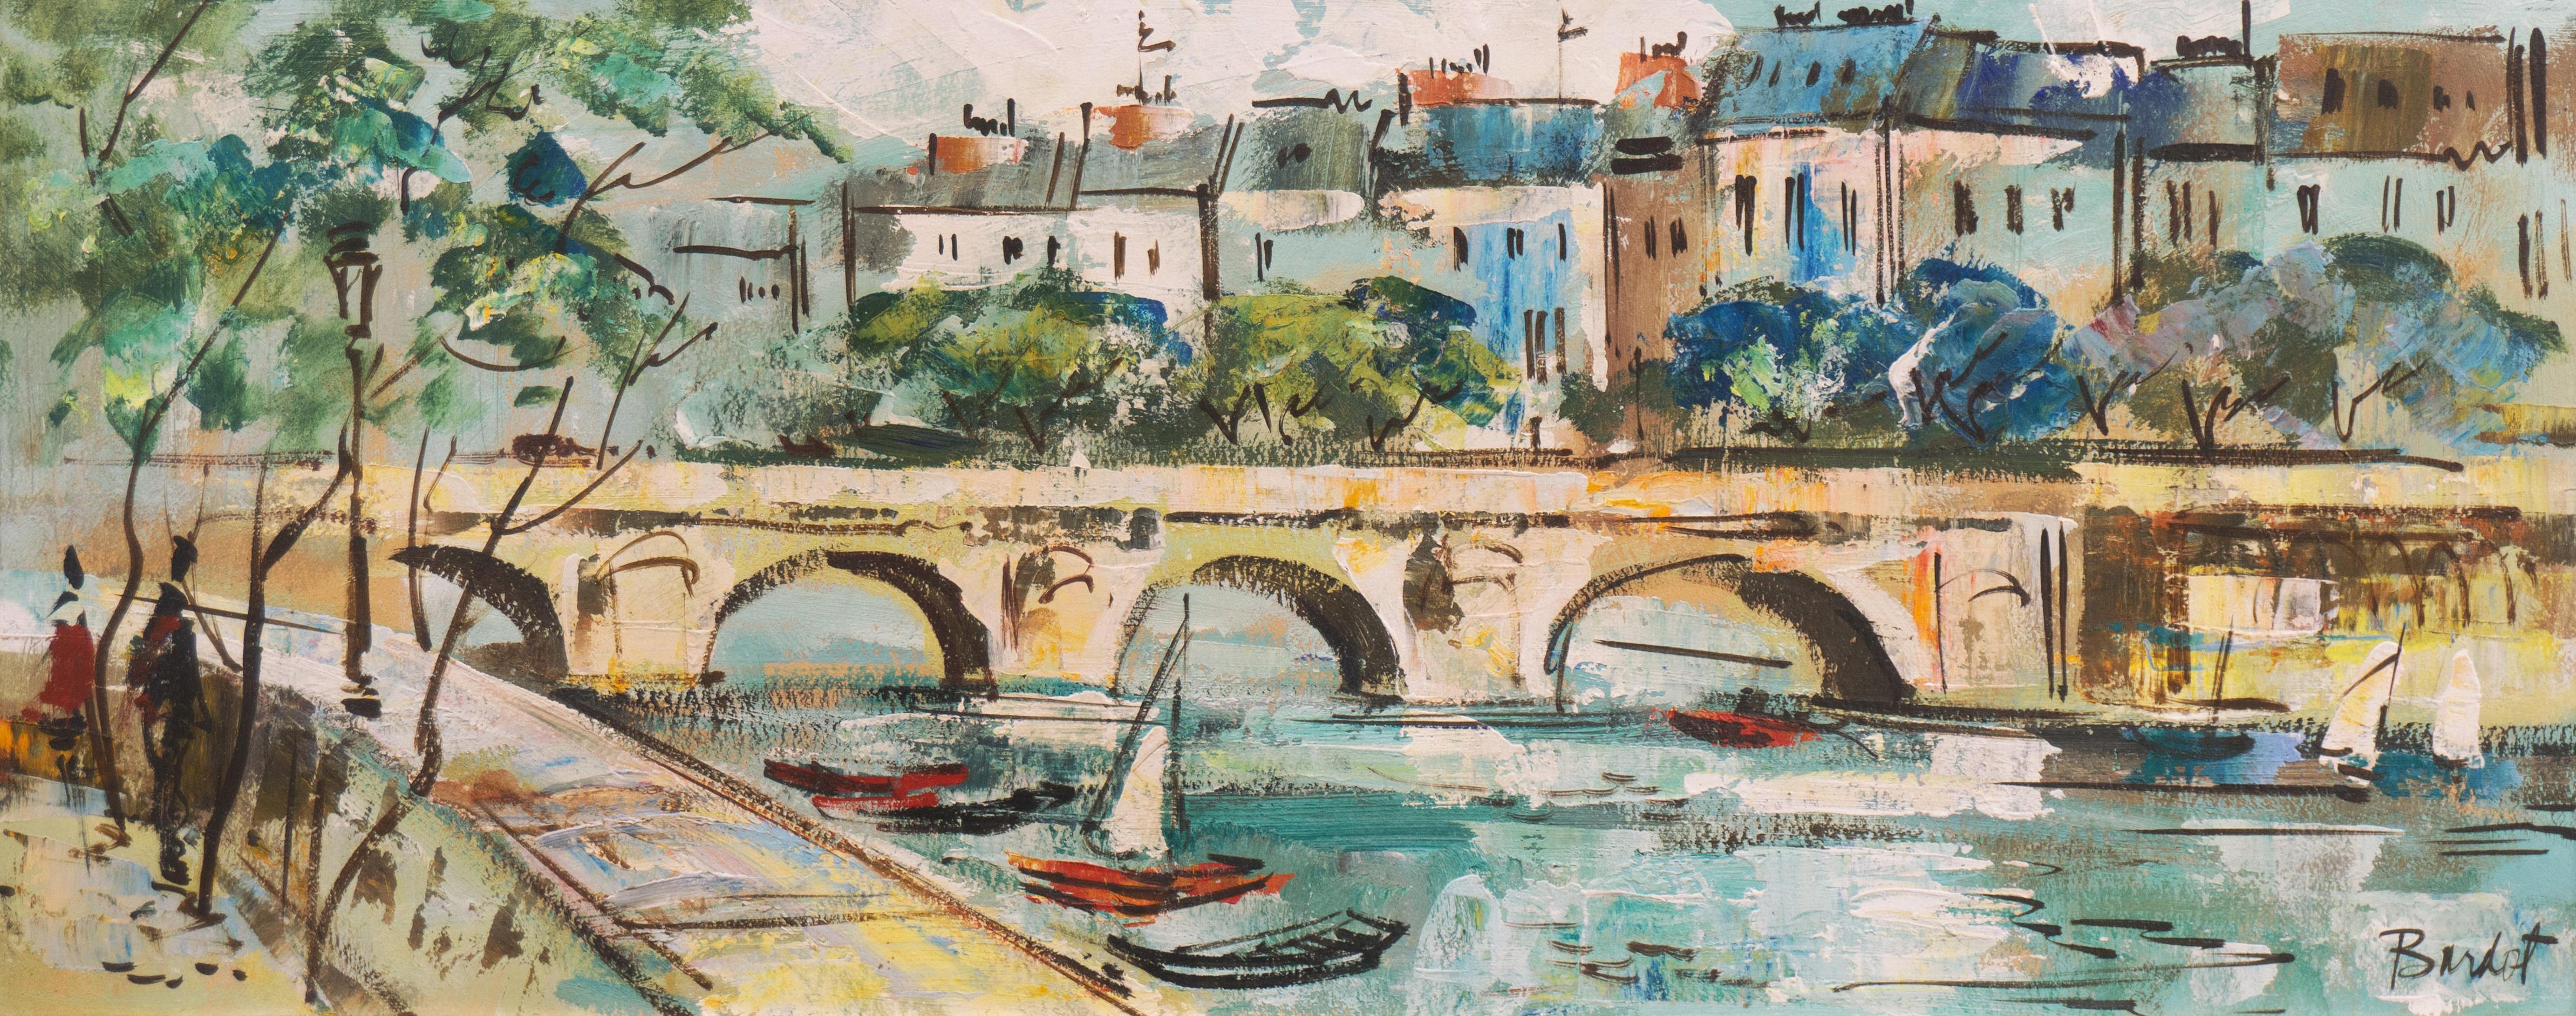 Bardot Landscape Painting - 'Pont Marie, the Seine', School of Paris, Parisian Oil Landscape, Cityscape